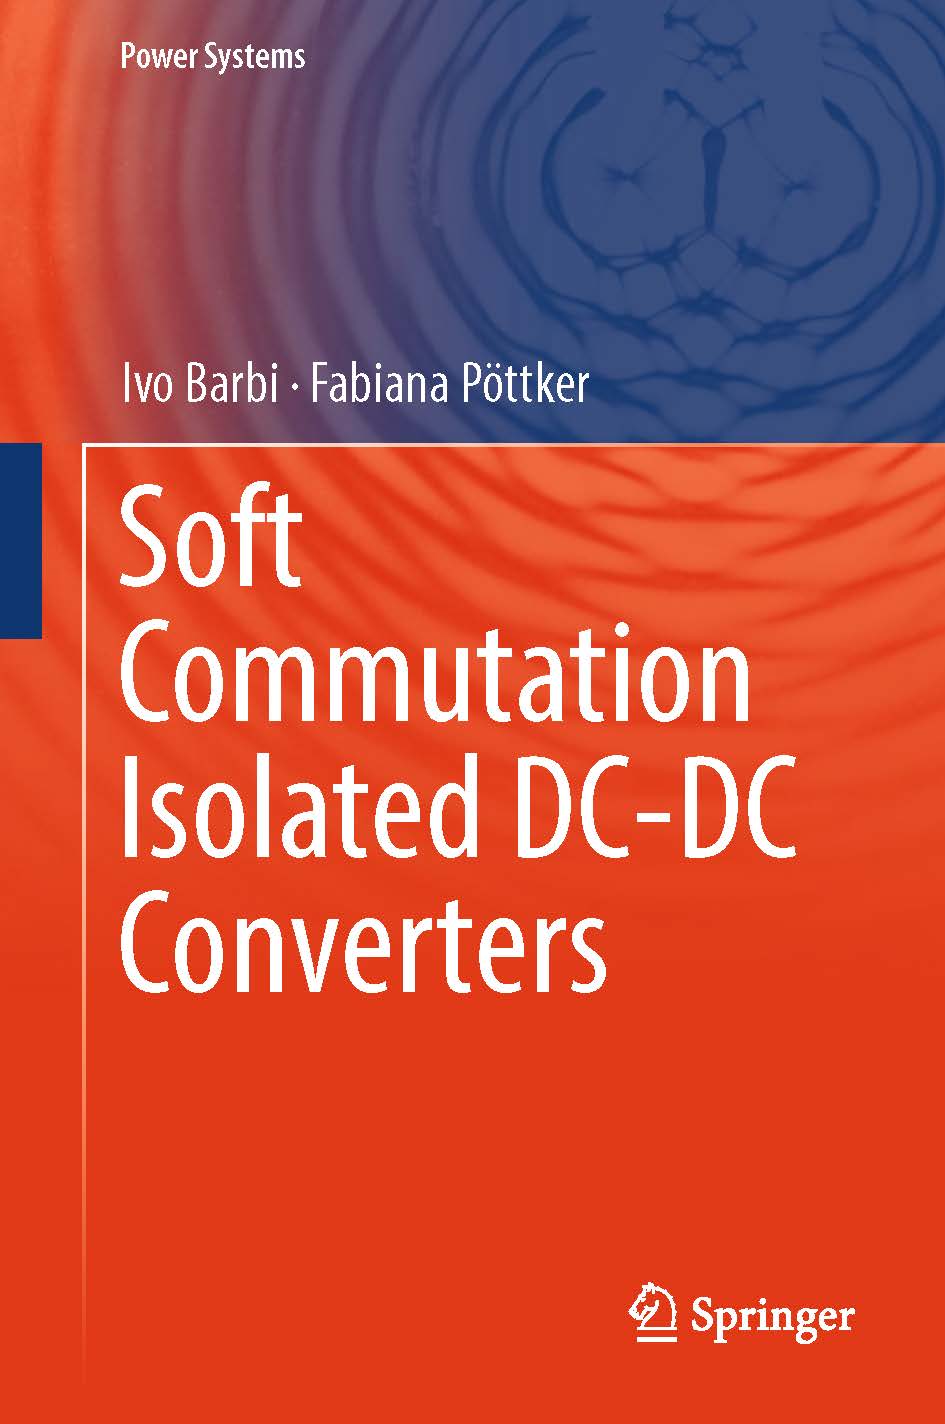 页面提取自－2019_Book_Soft Commutation Isolated DC-DC Converters.jpg